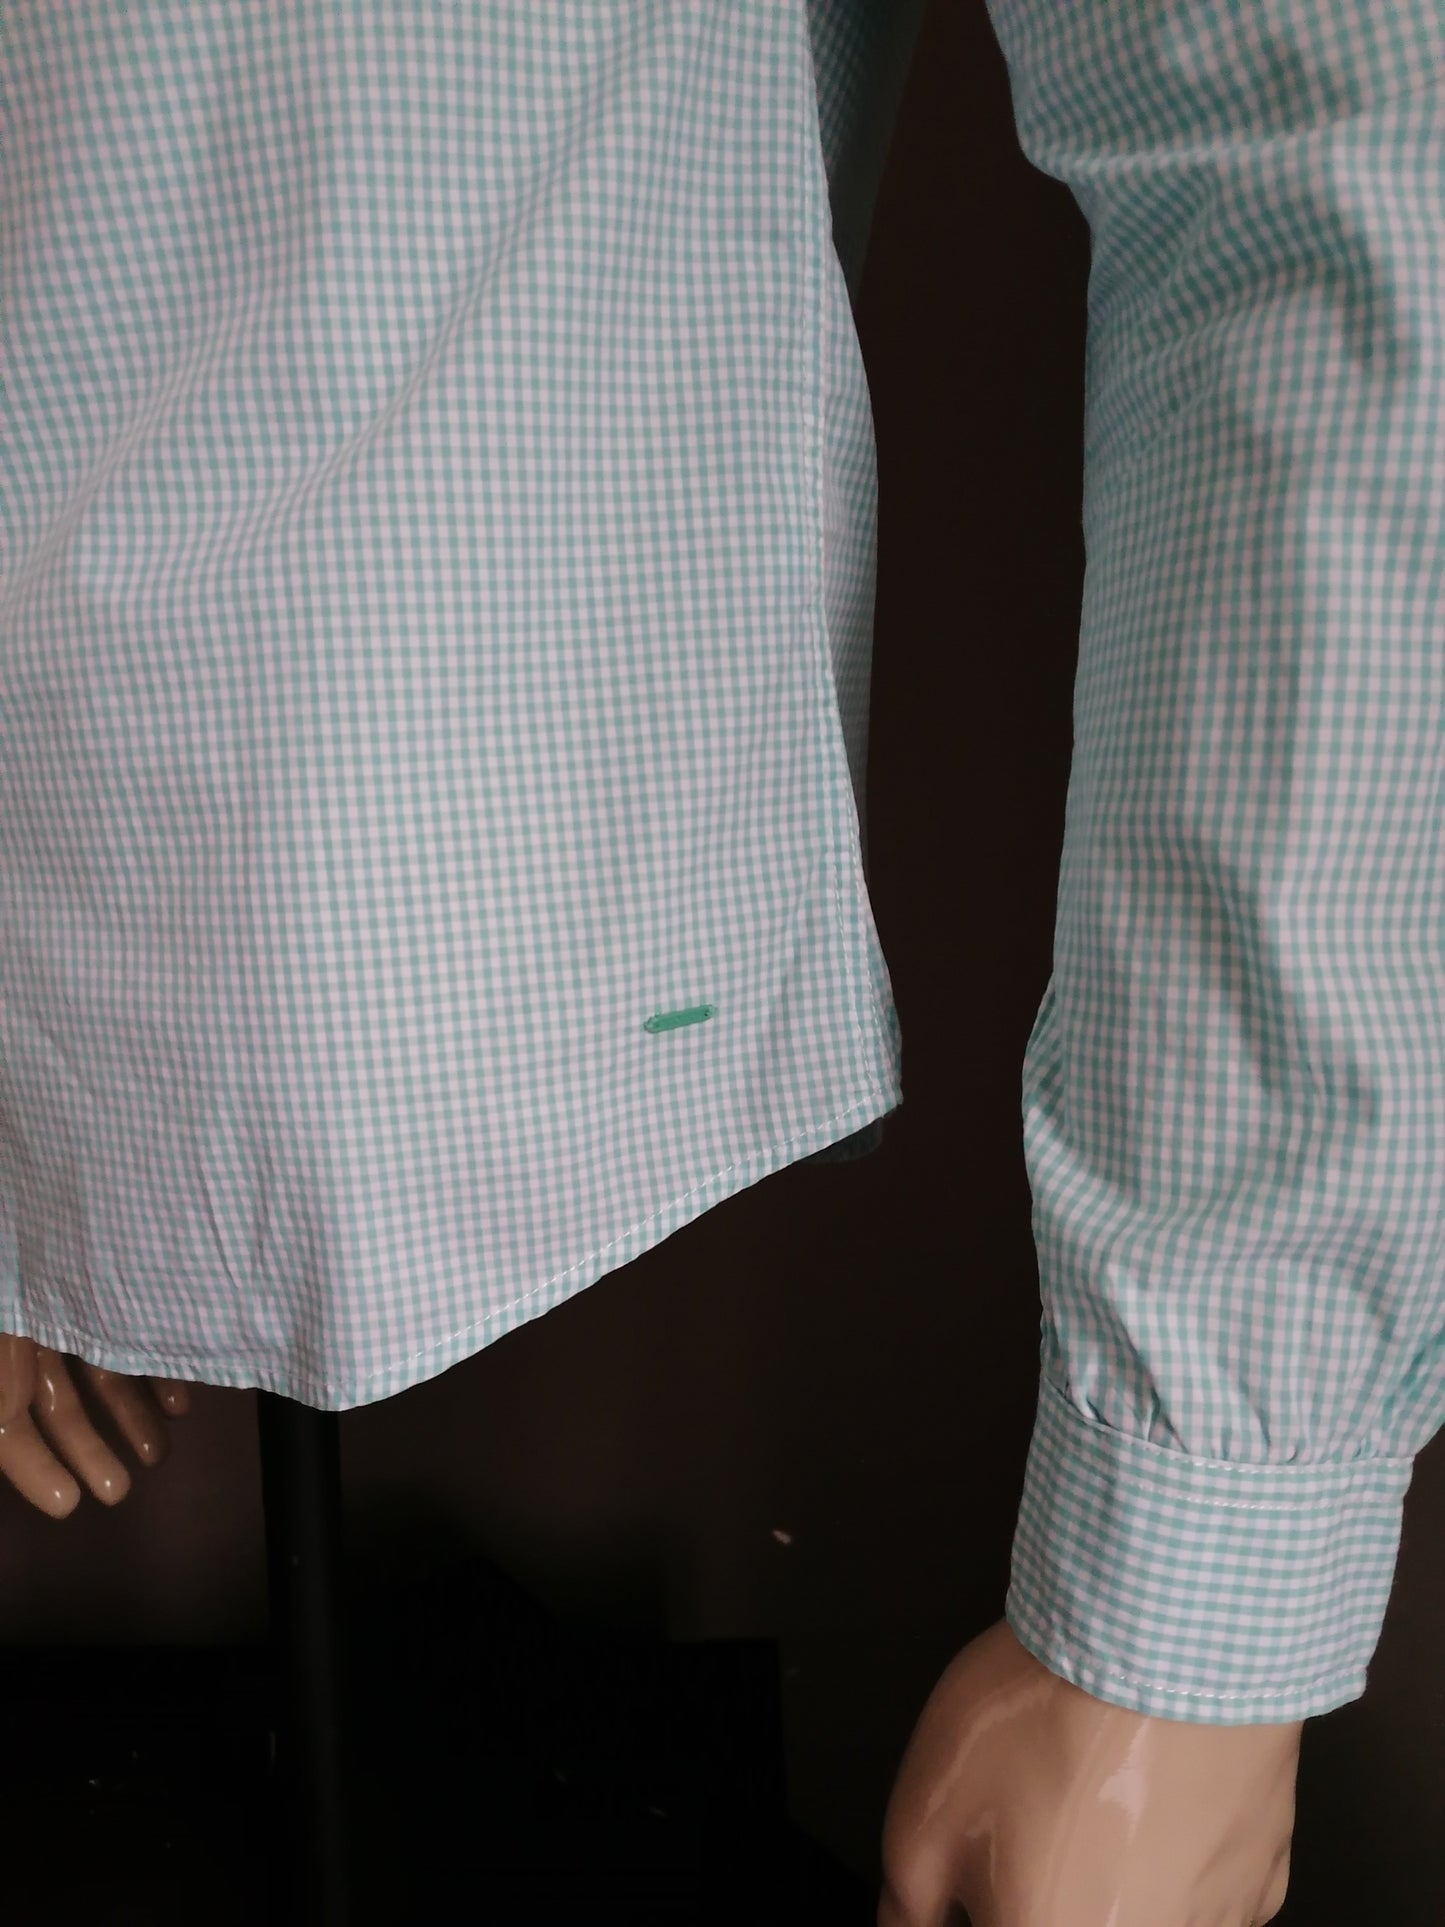 Camicia Scotch & Soda. Bianco verde a quadretti. Taglia S.